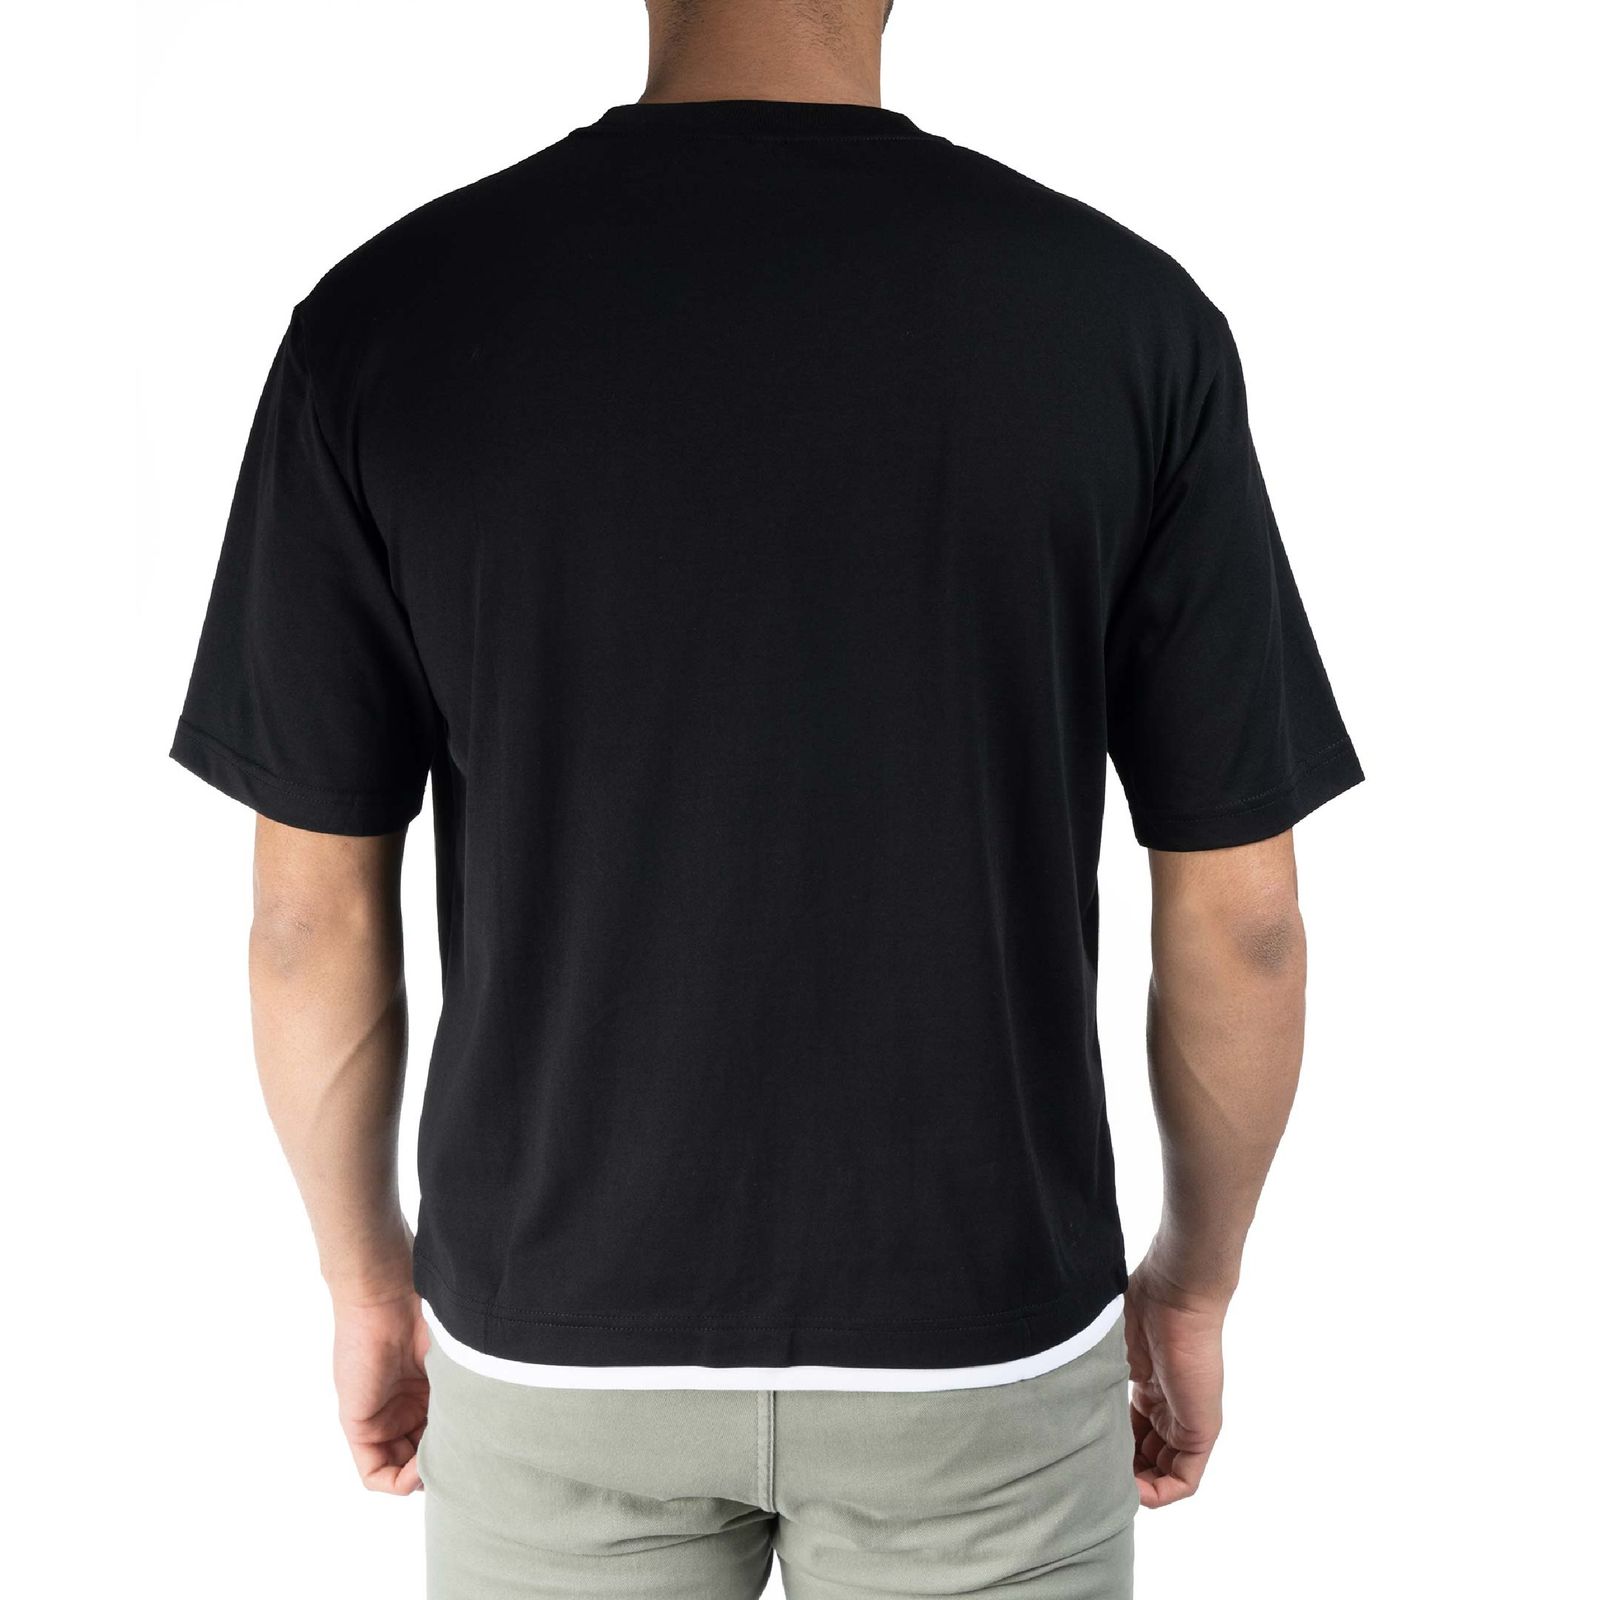 تی شرت آستین کوتاه مردانه جین وست مدل یقه گرد کد 1551308 رنگ مشکی -  - 2